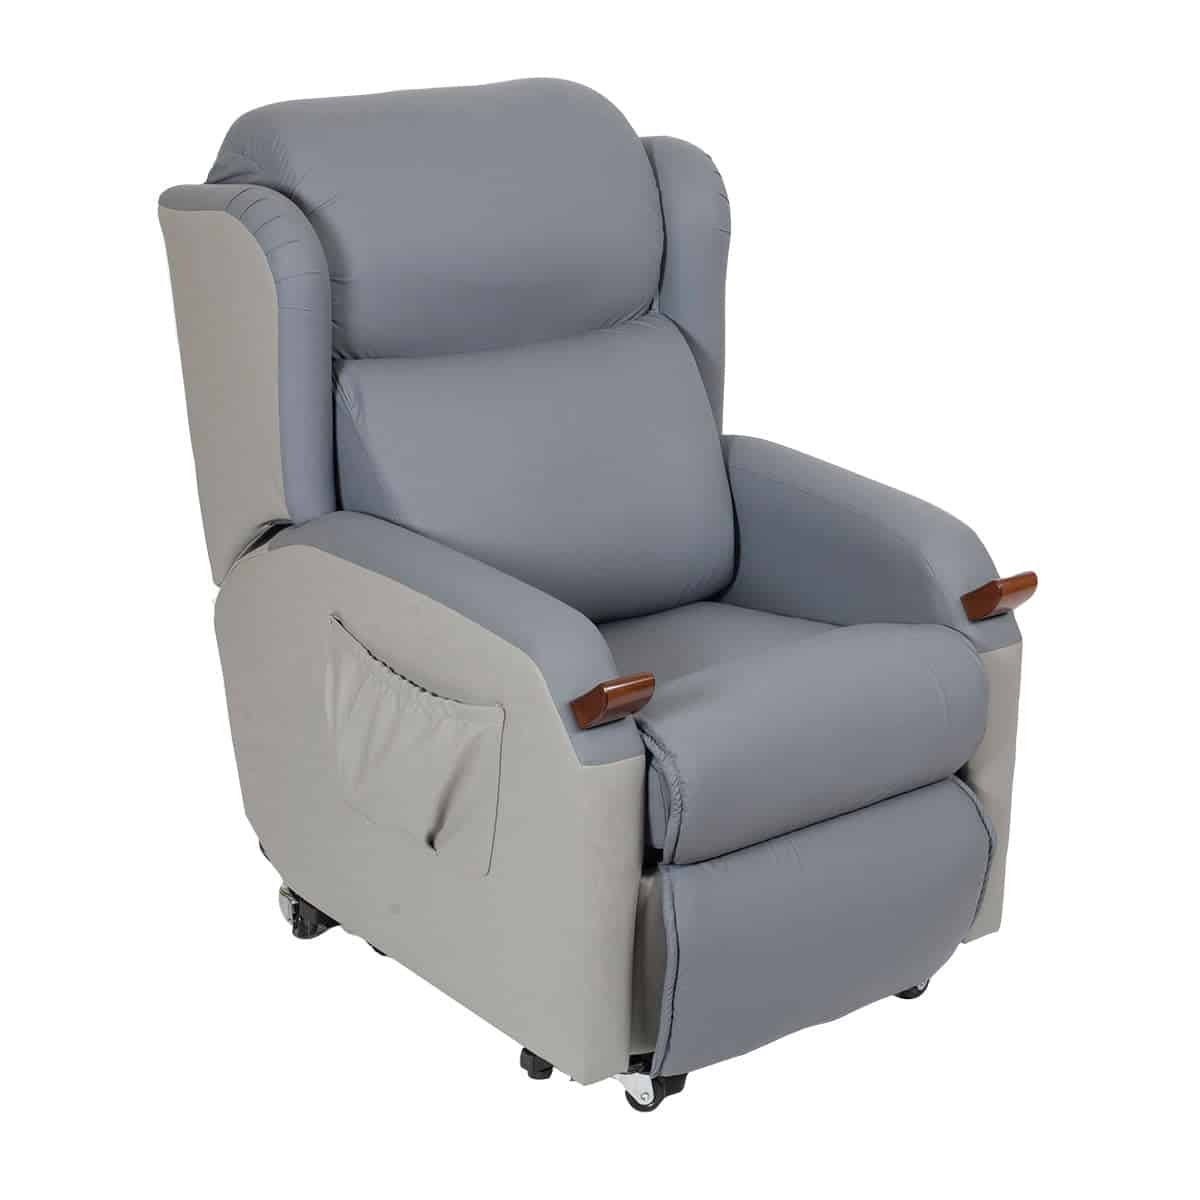 Comfy Life – Air Chair